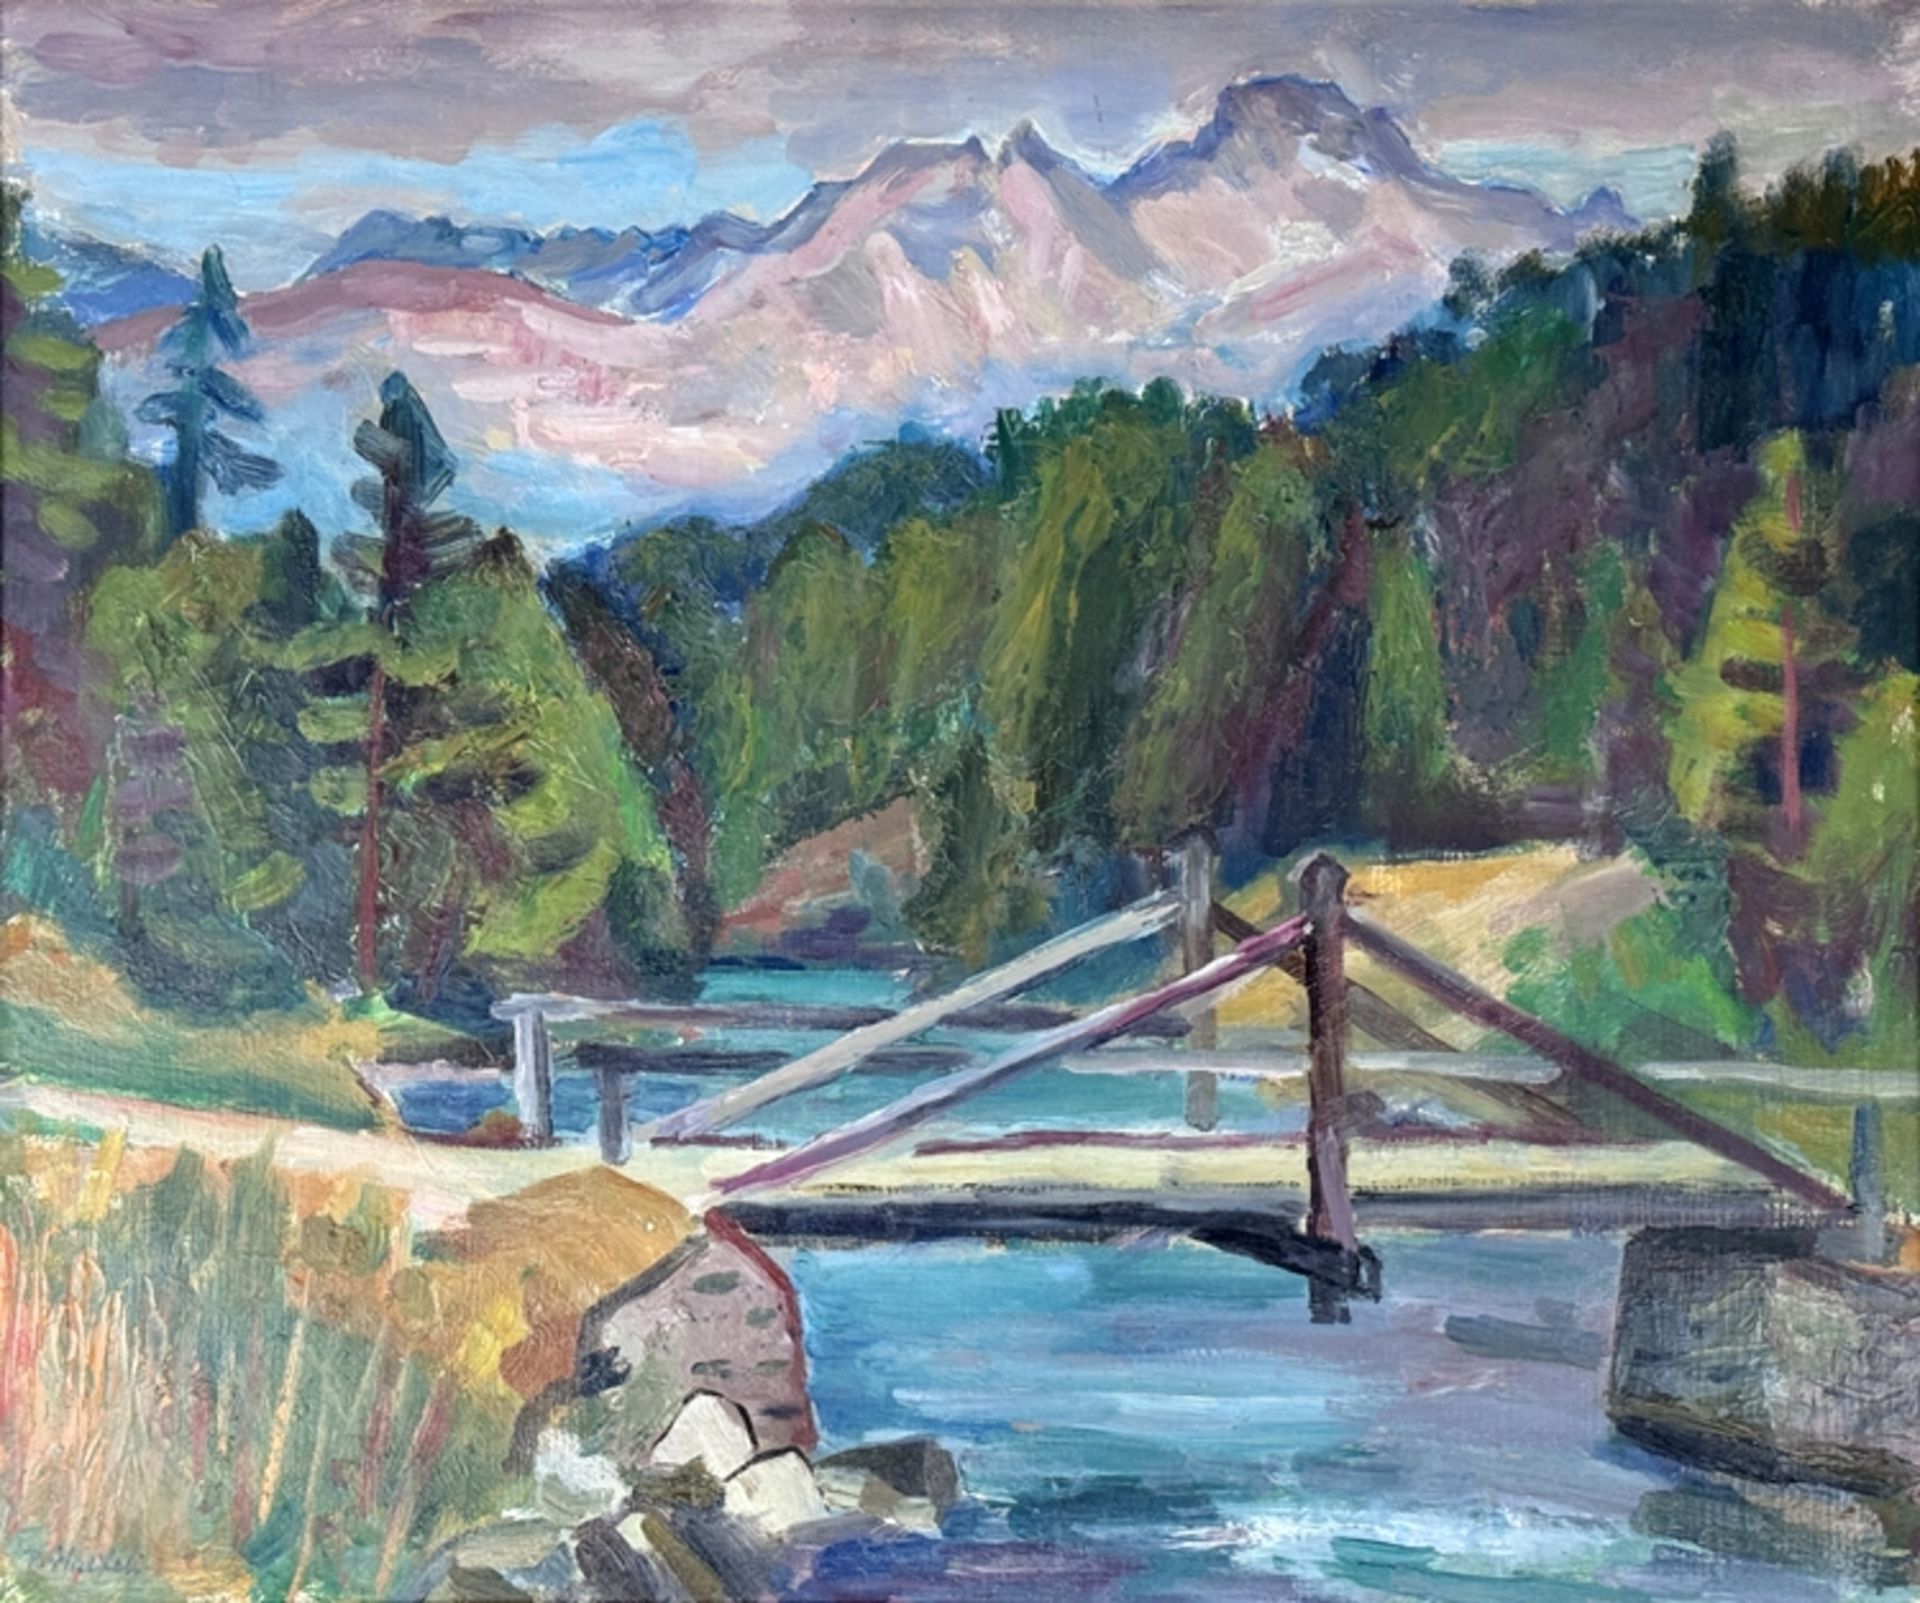 Haefeli, Paul Emil (1899 Trimbach - 1973 St. Gallen) "Landschaftsausblick", mit Fluss und Bergen im